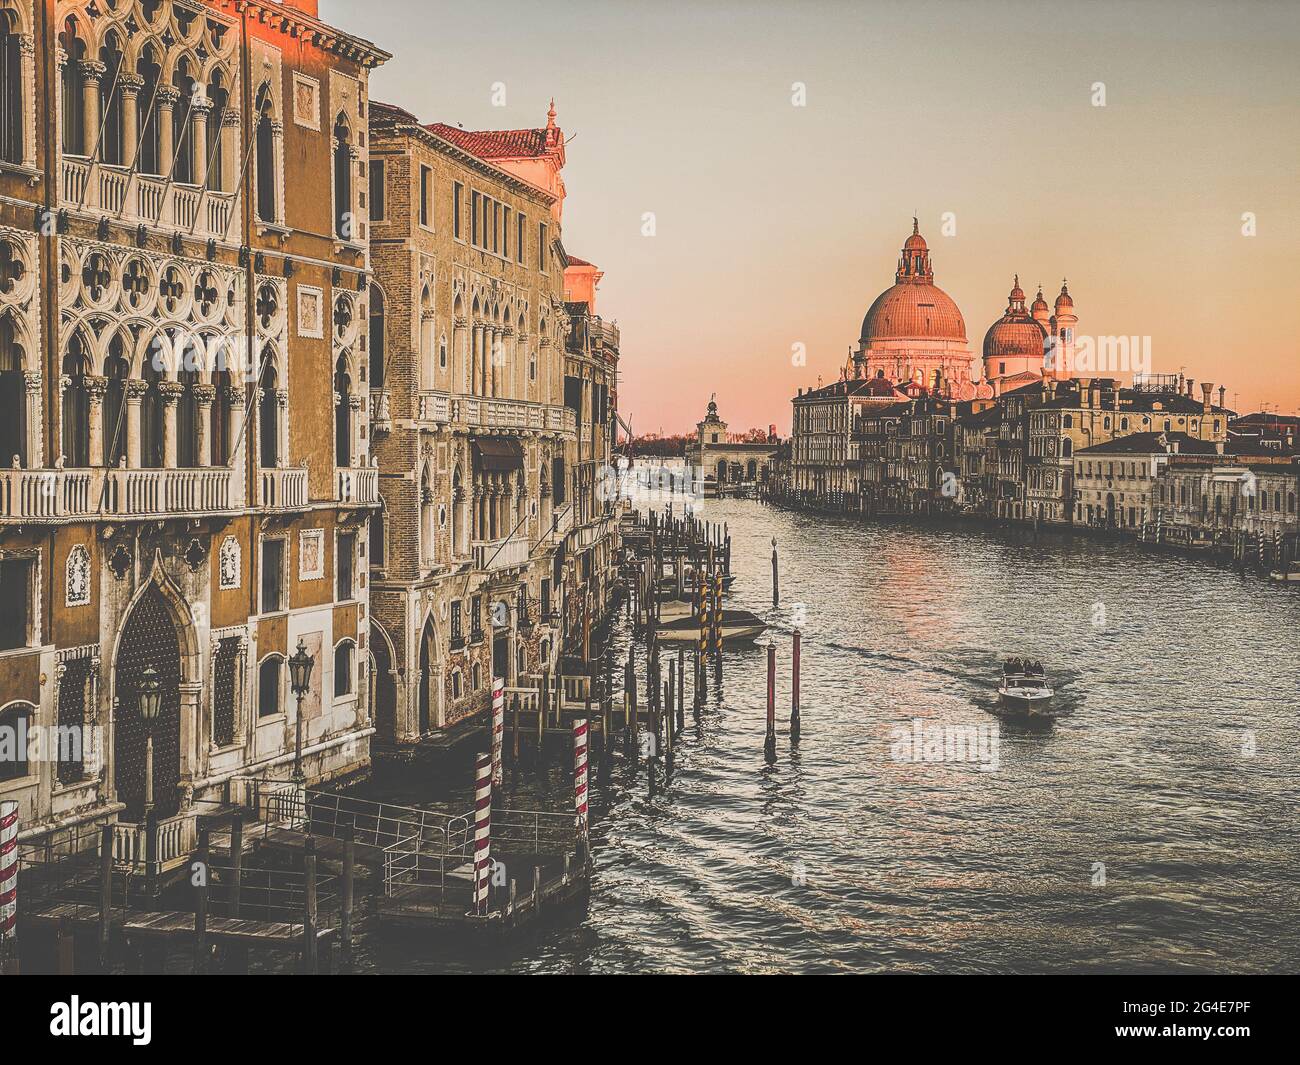 Blick auf den Canale Grande und die Basilika Santa Maria della Salute von der Ponte dell'Accademia in Venedig, Italien. Getöntes Bild. Stockfoto